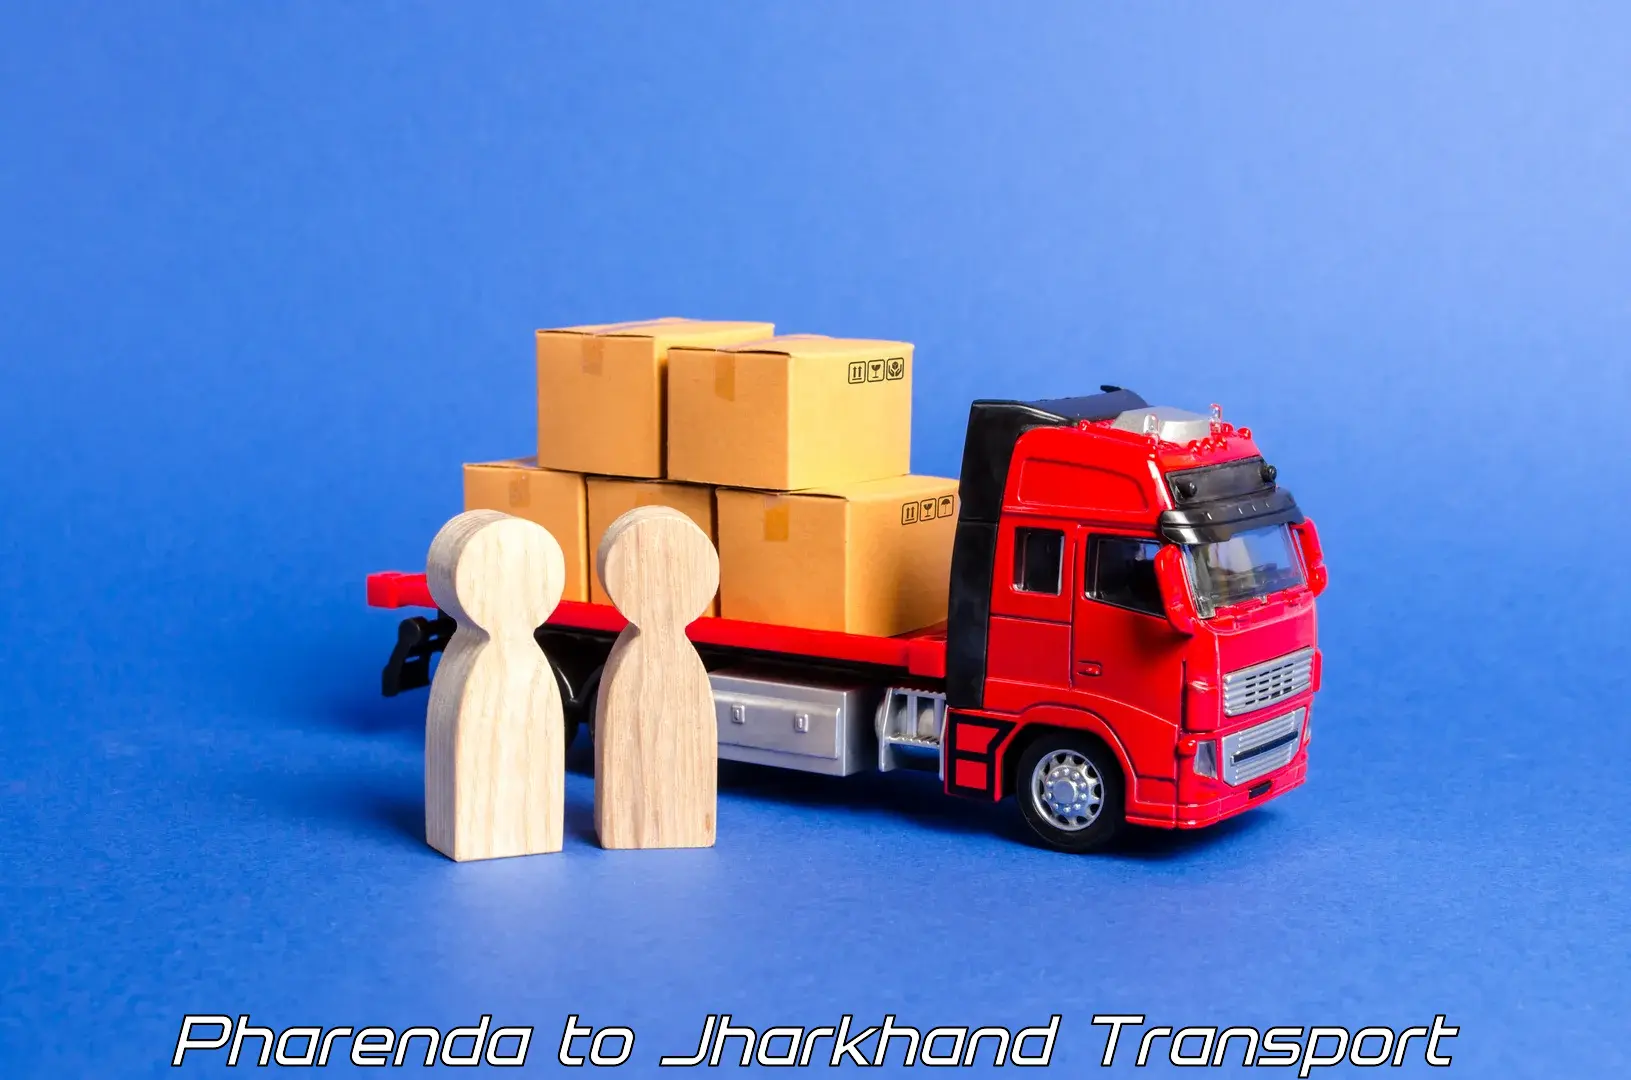 Commercial transport service Pharenda to Isri